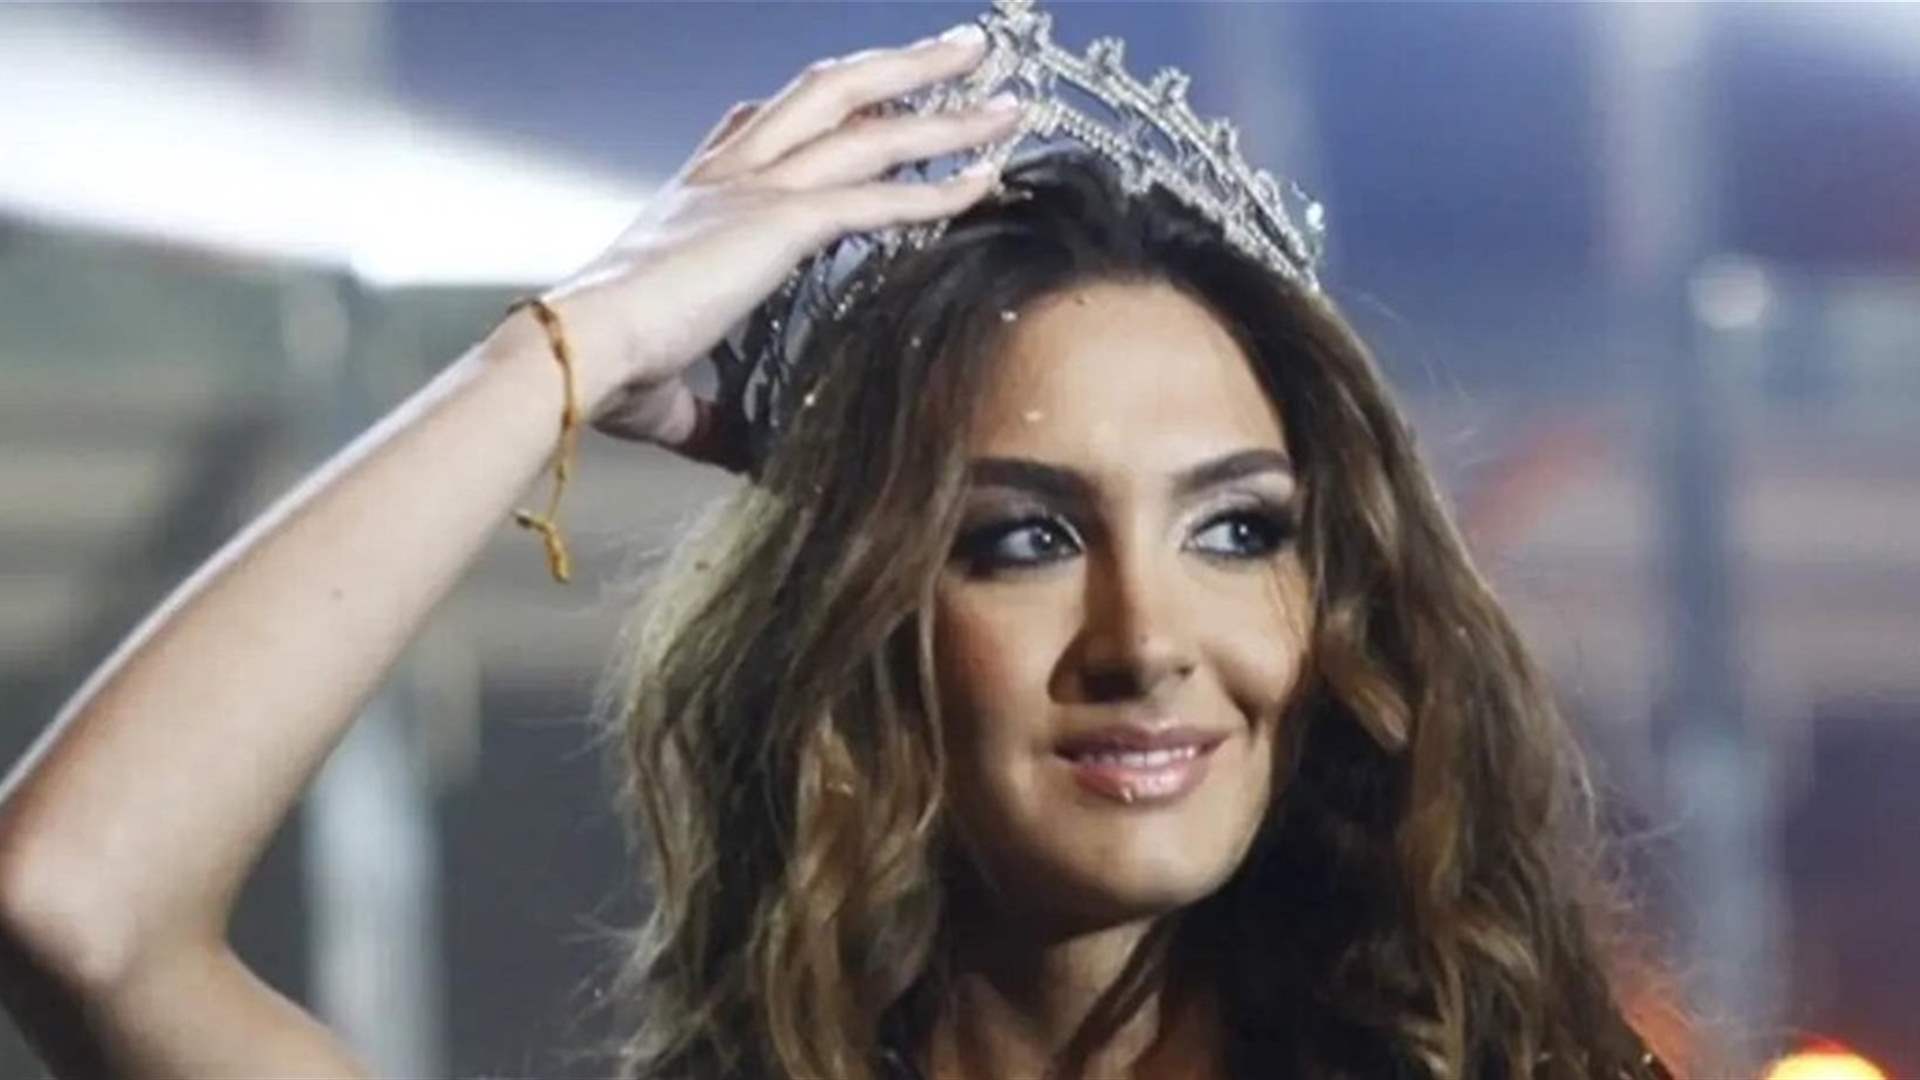 بإطلالة ملكية وفستان لافت... ملكة جمال لبنان السابقة رينا شيباني تدخل القفص الذهبي! (صور)